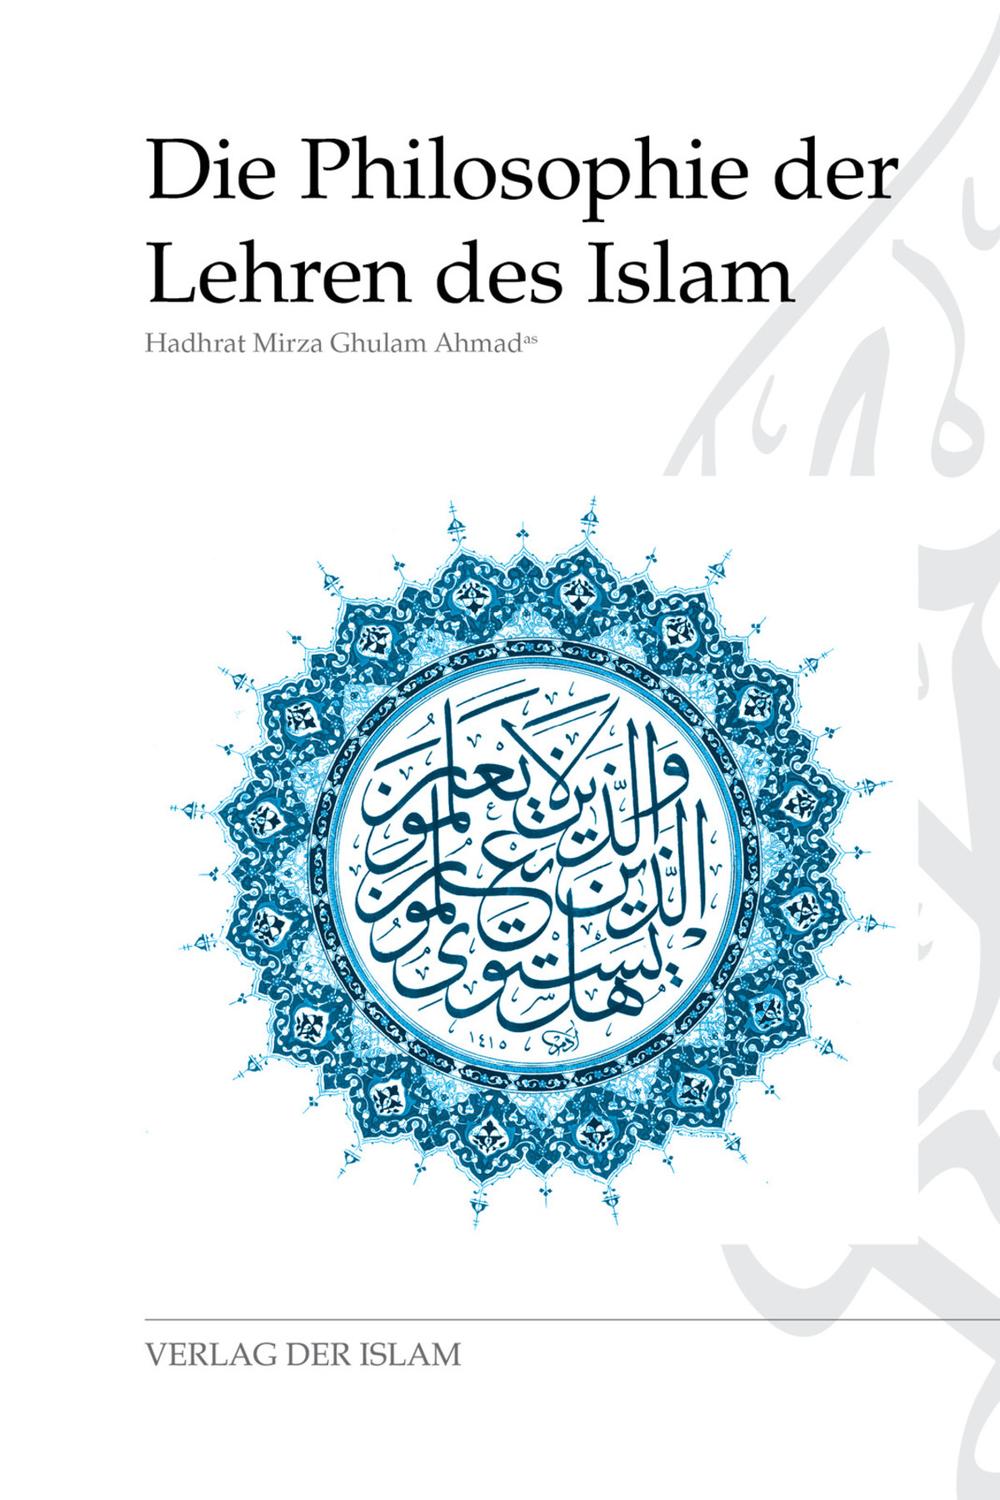 Die Philosophie der Lehren des Islam - Hadhrat Mirza Ghulam Ahmad,,